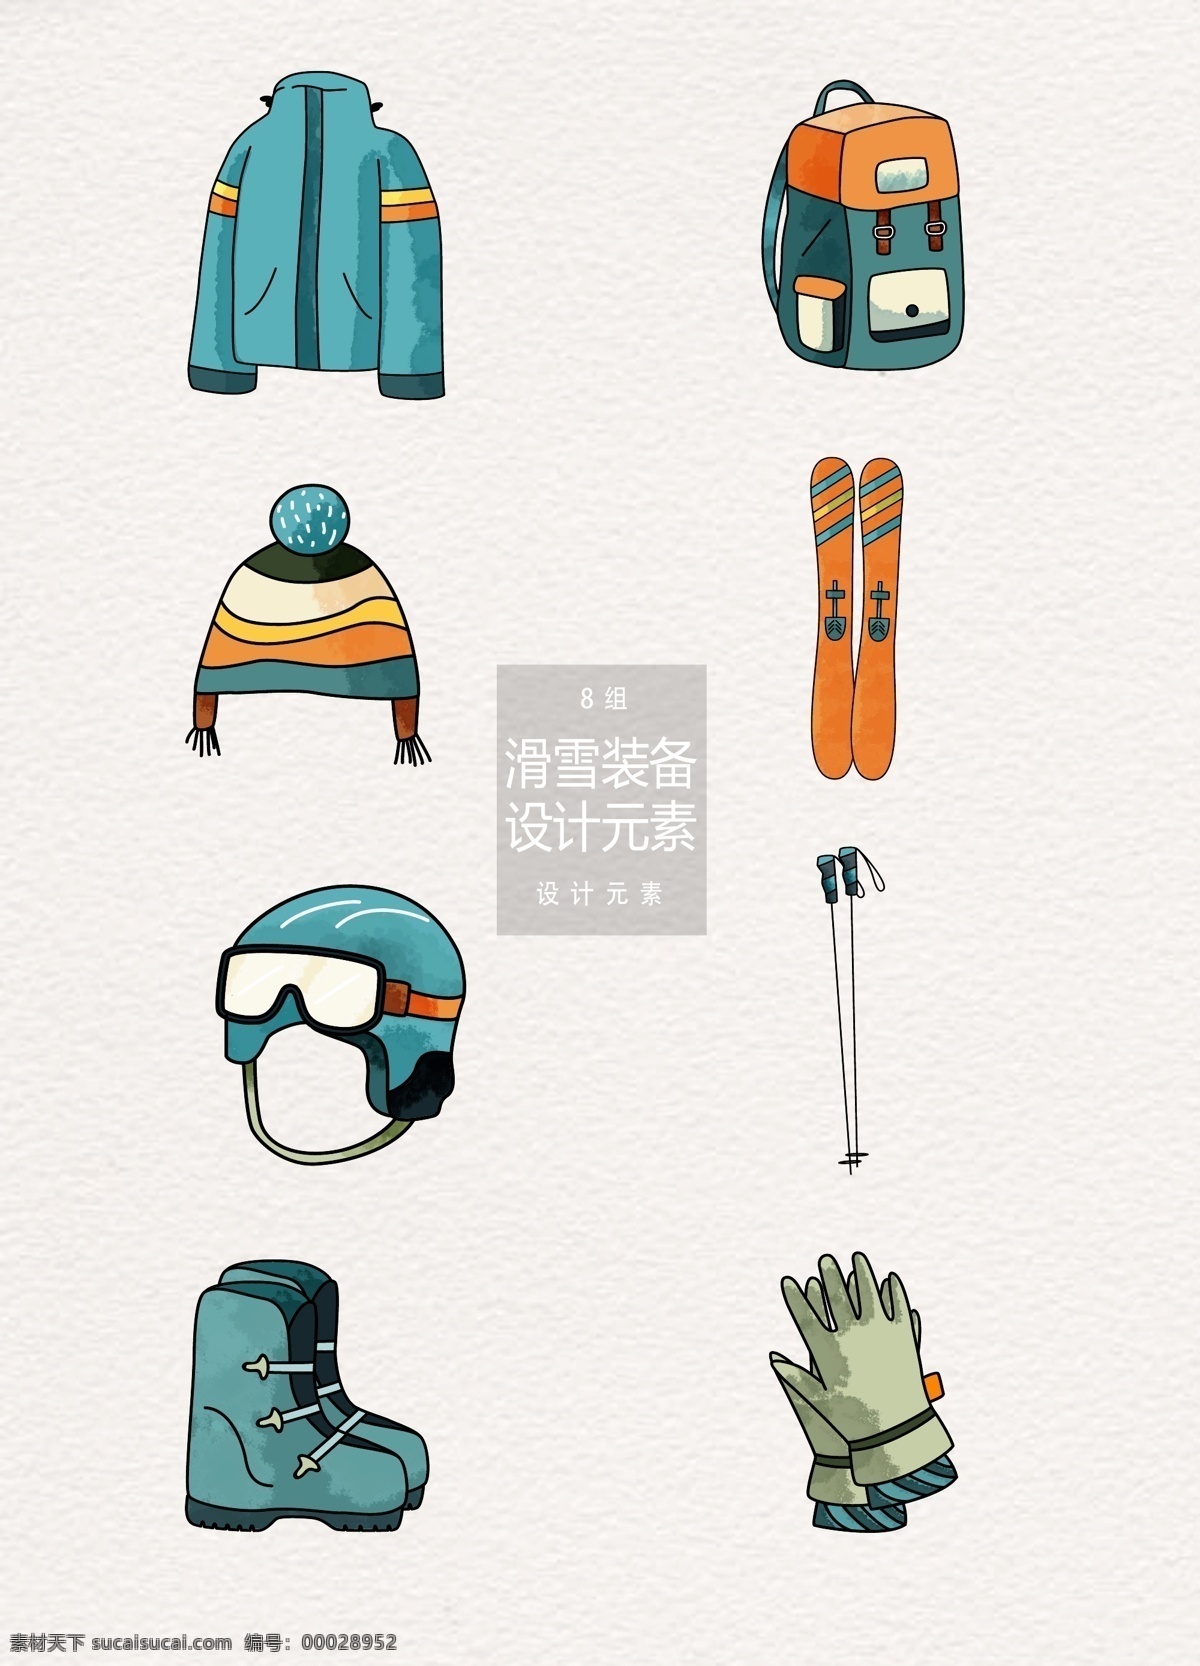 手绘 滑雪 装备 元素 设计元素 冬天 冬季 帽子 滑雪装备 外套 背包 滑雪板 头盔 手套